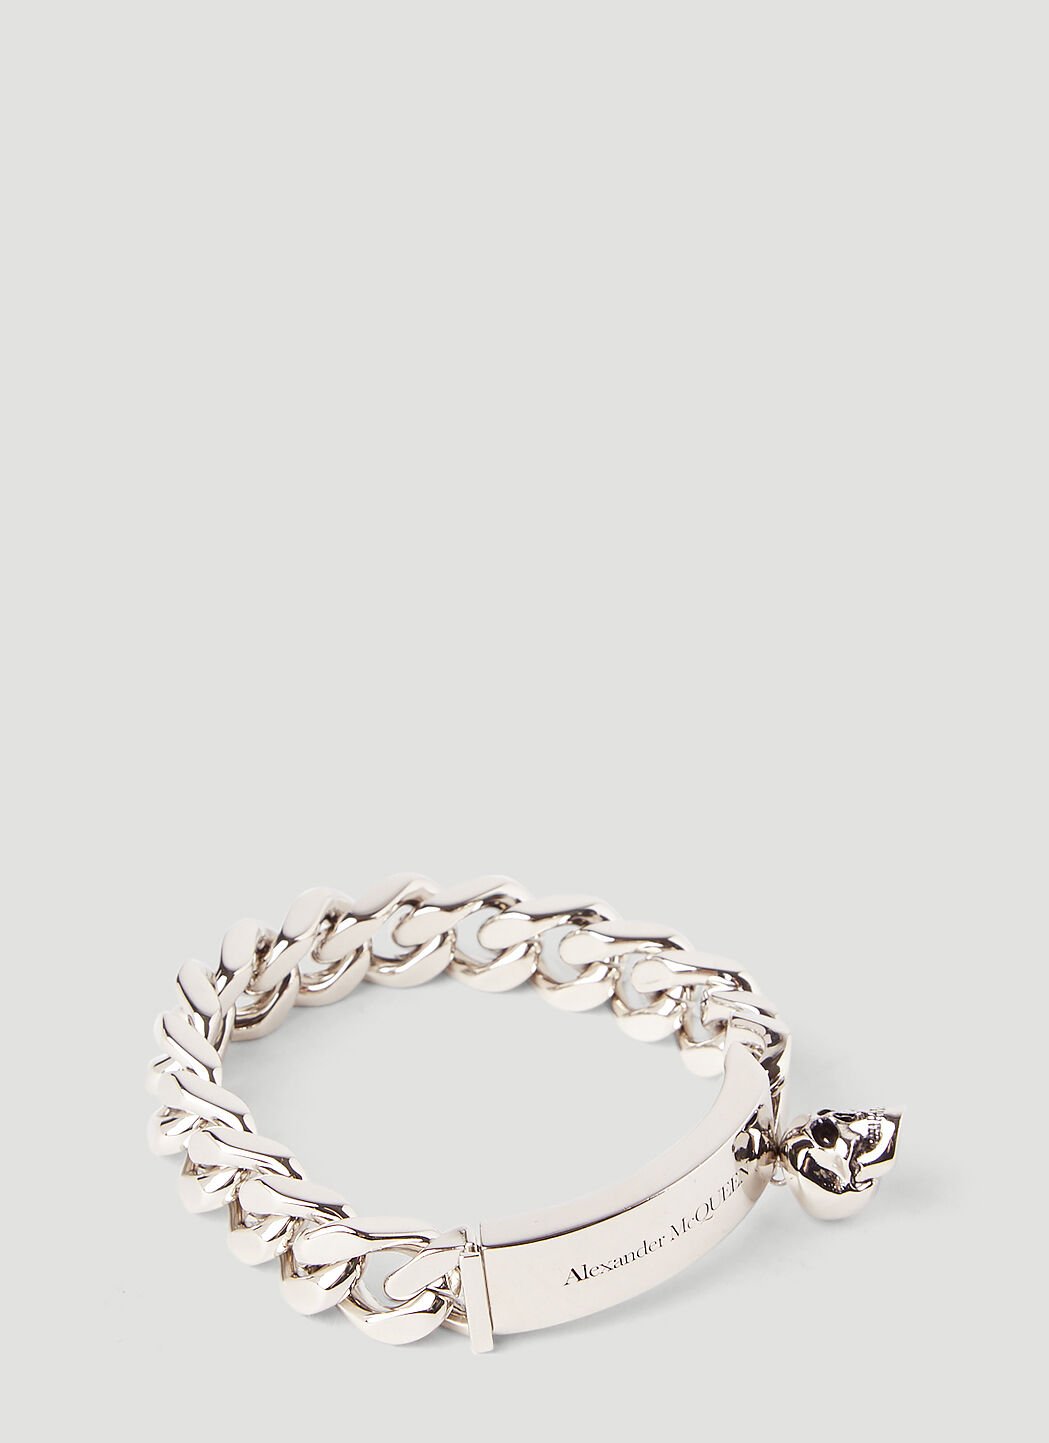 Alexander McQueen Skull Charm Curb-Chain Bracelet White amq0149025